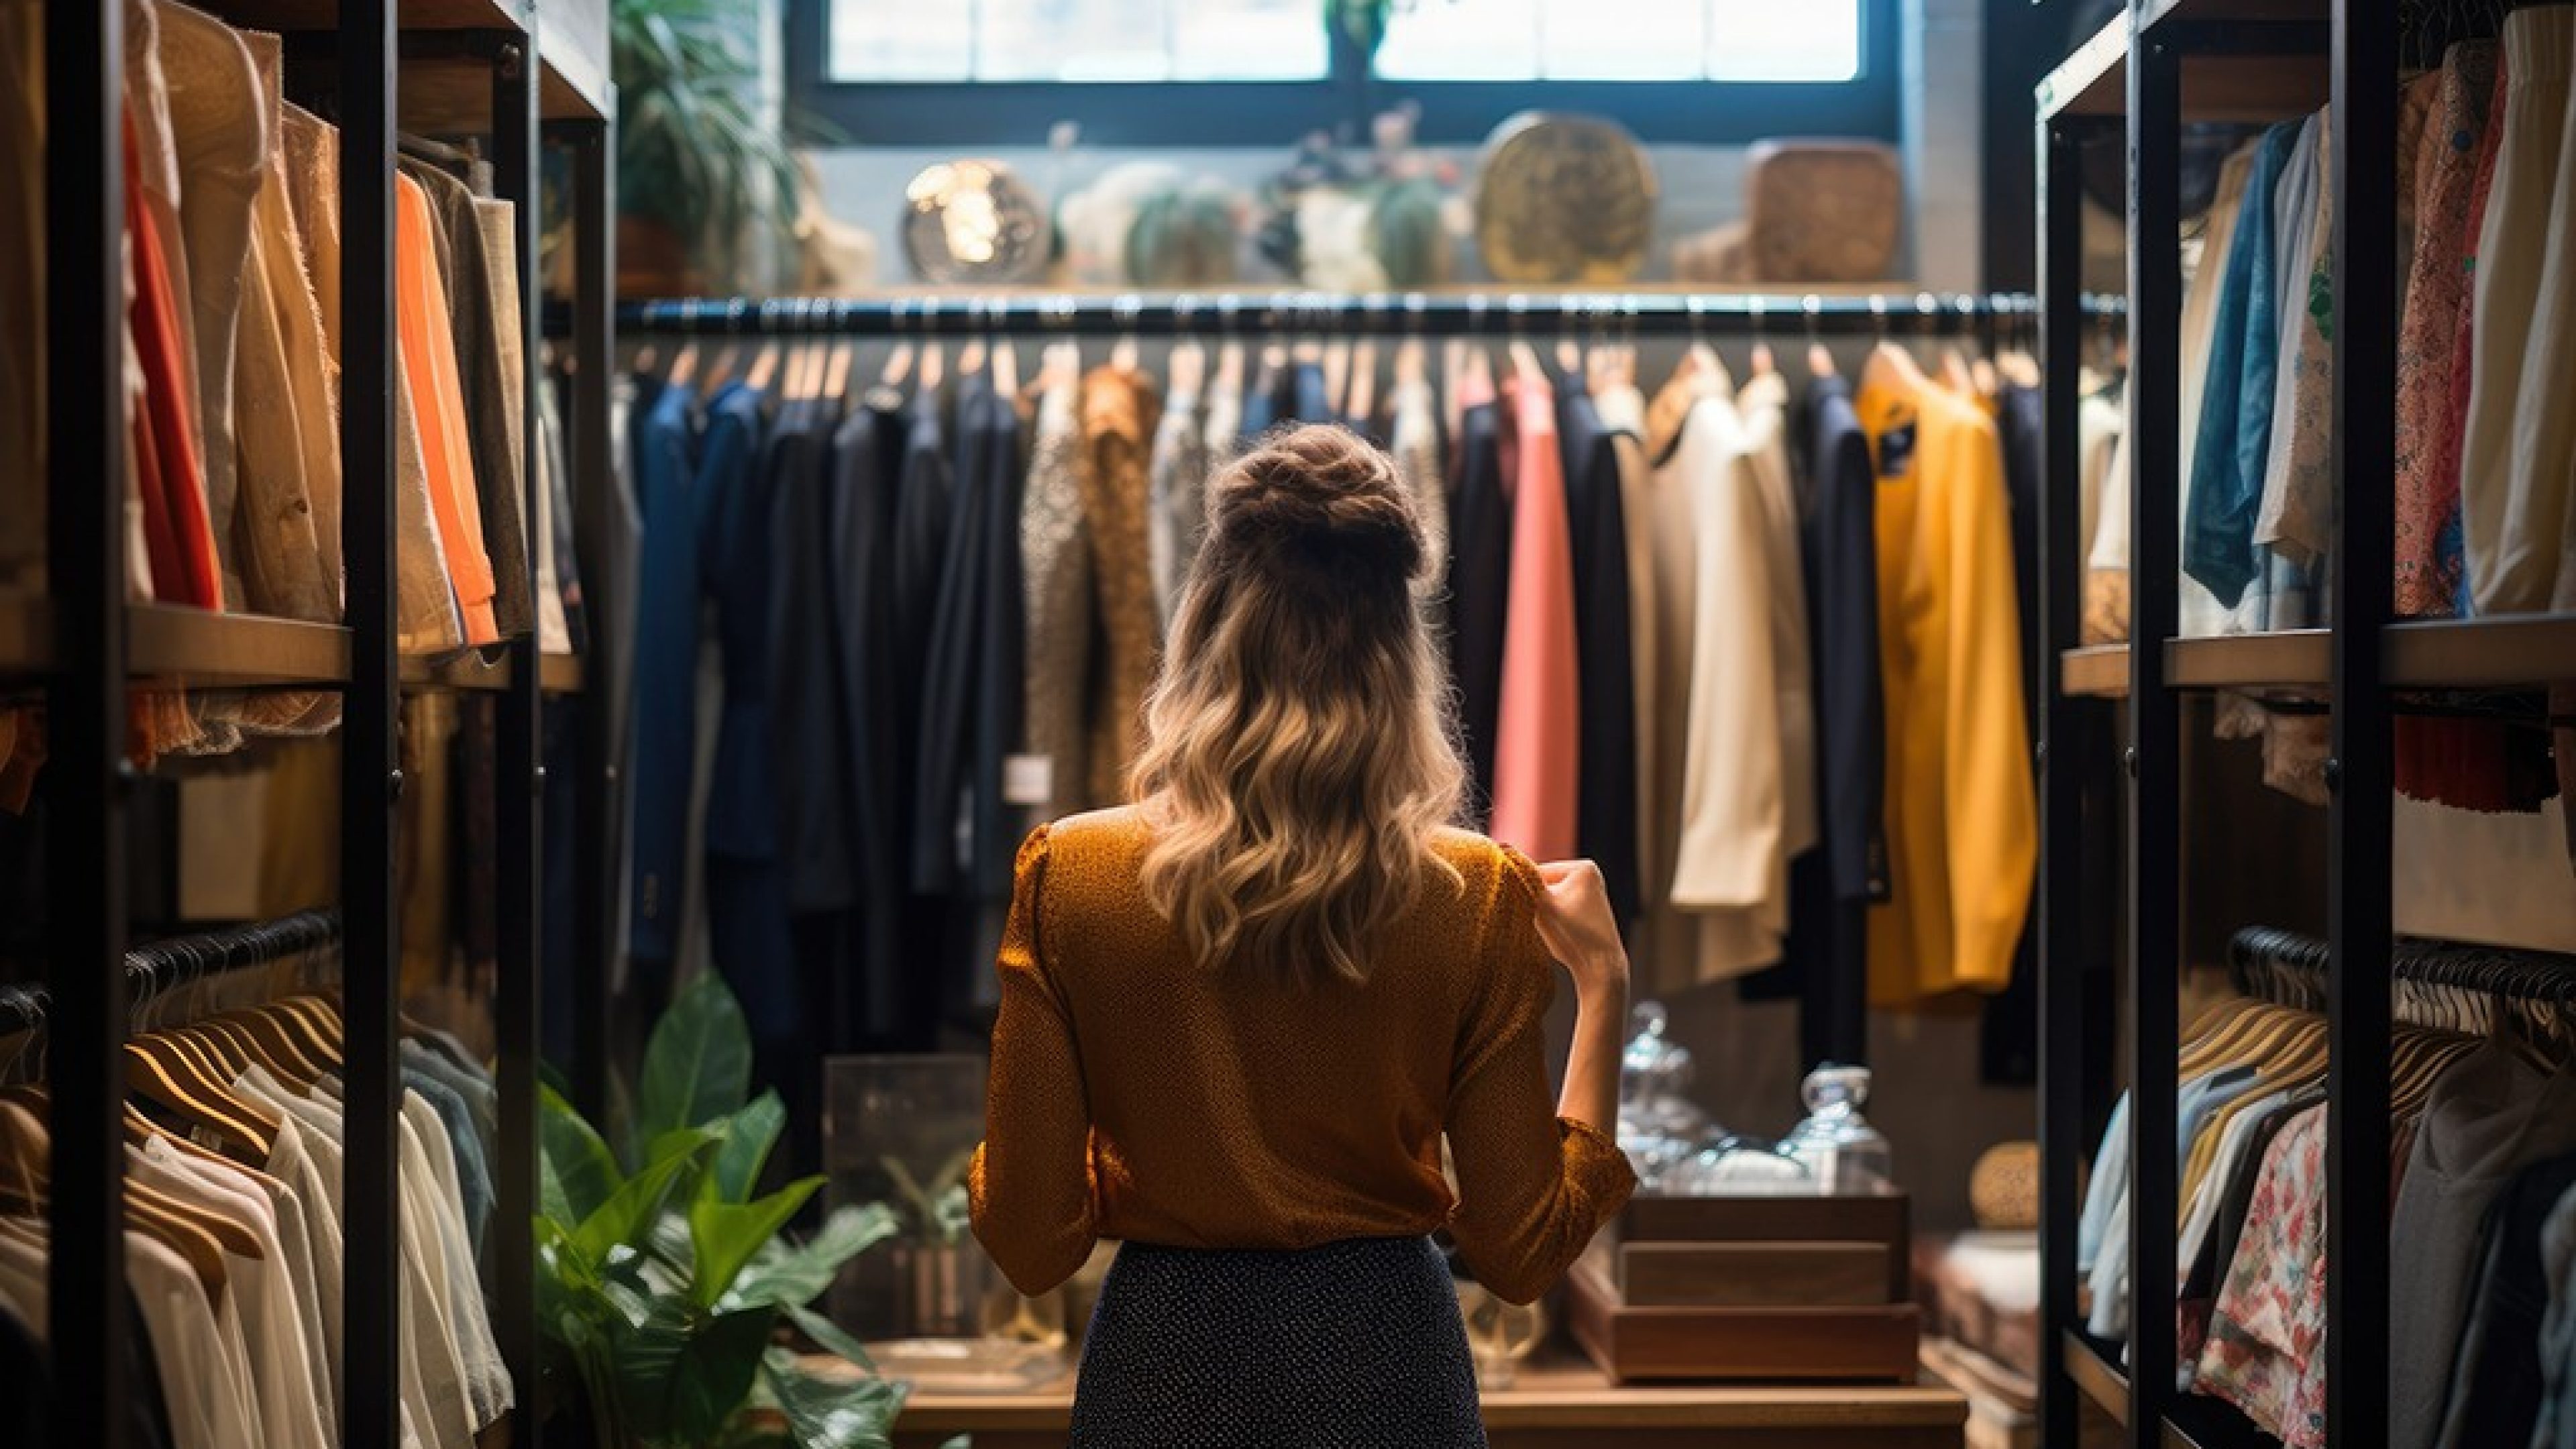 Donna in piedi al centro del negozio che osserva scaffali di vestiti.